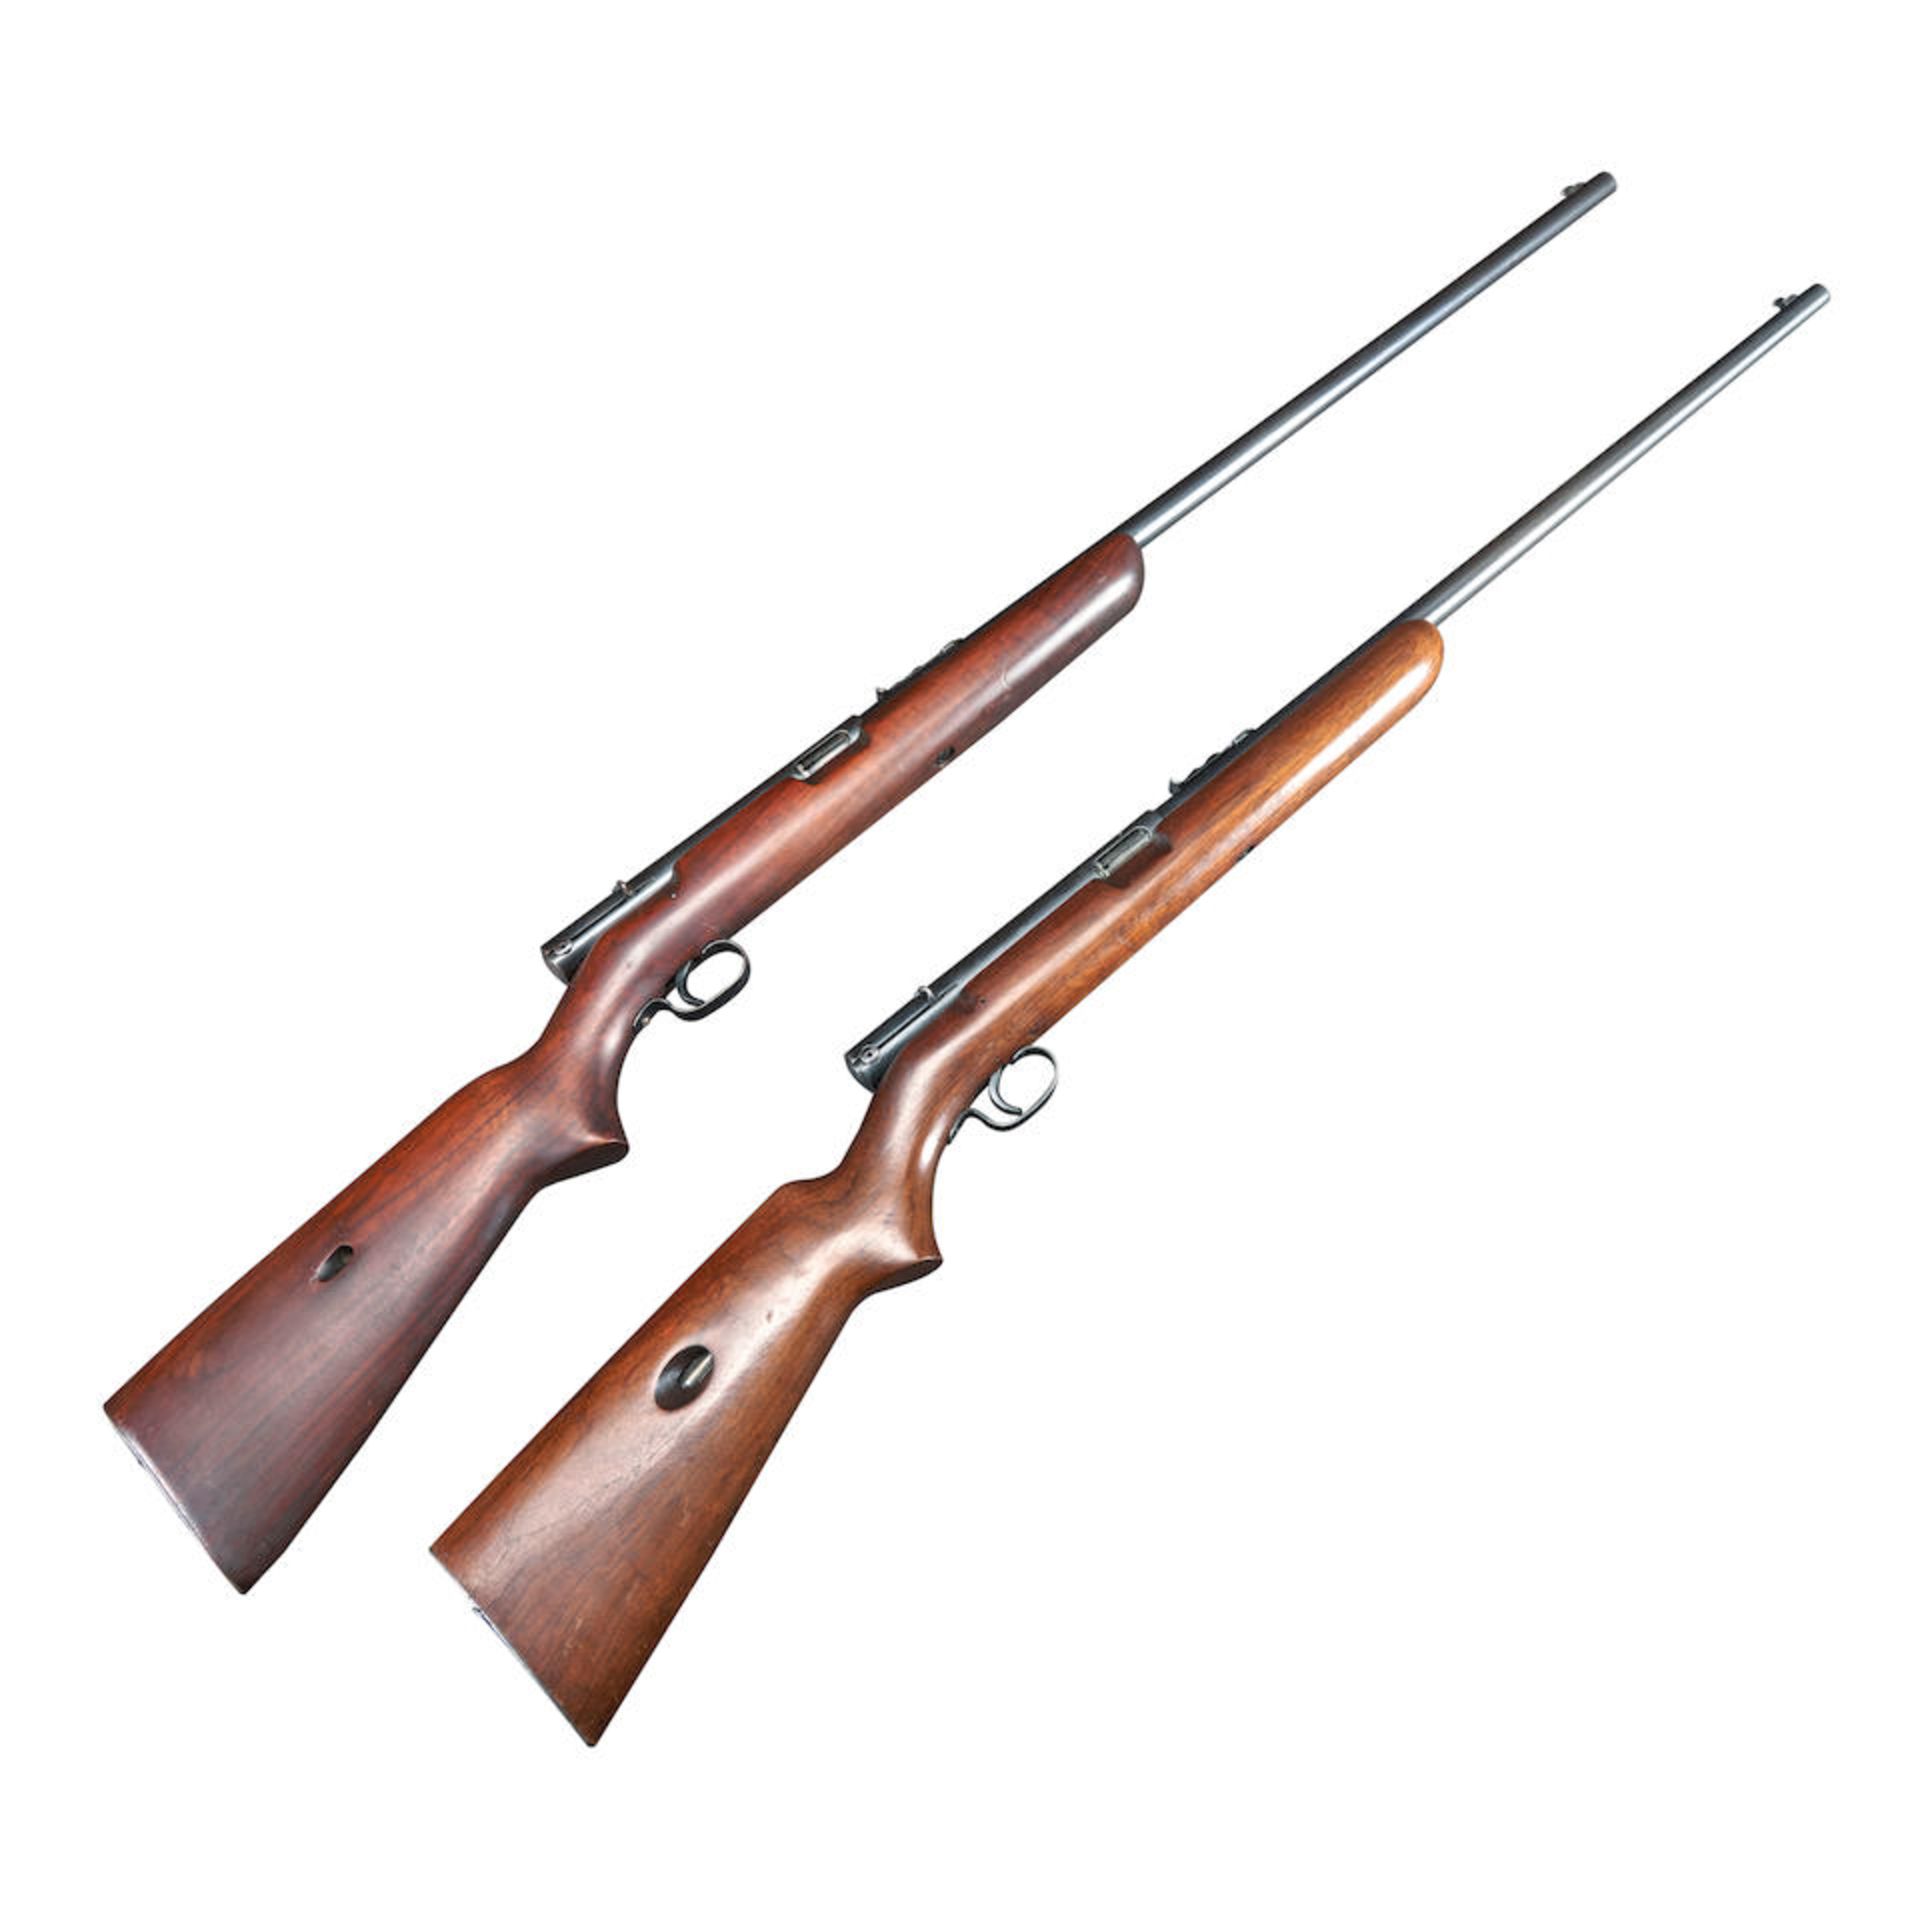 Two Winchester Model 74 Semi Automatic Rifles, Curio or Relic firearm